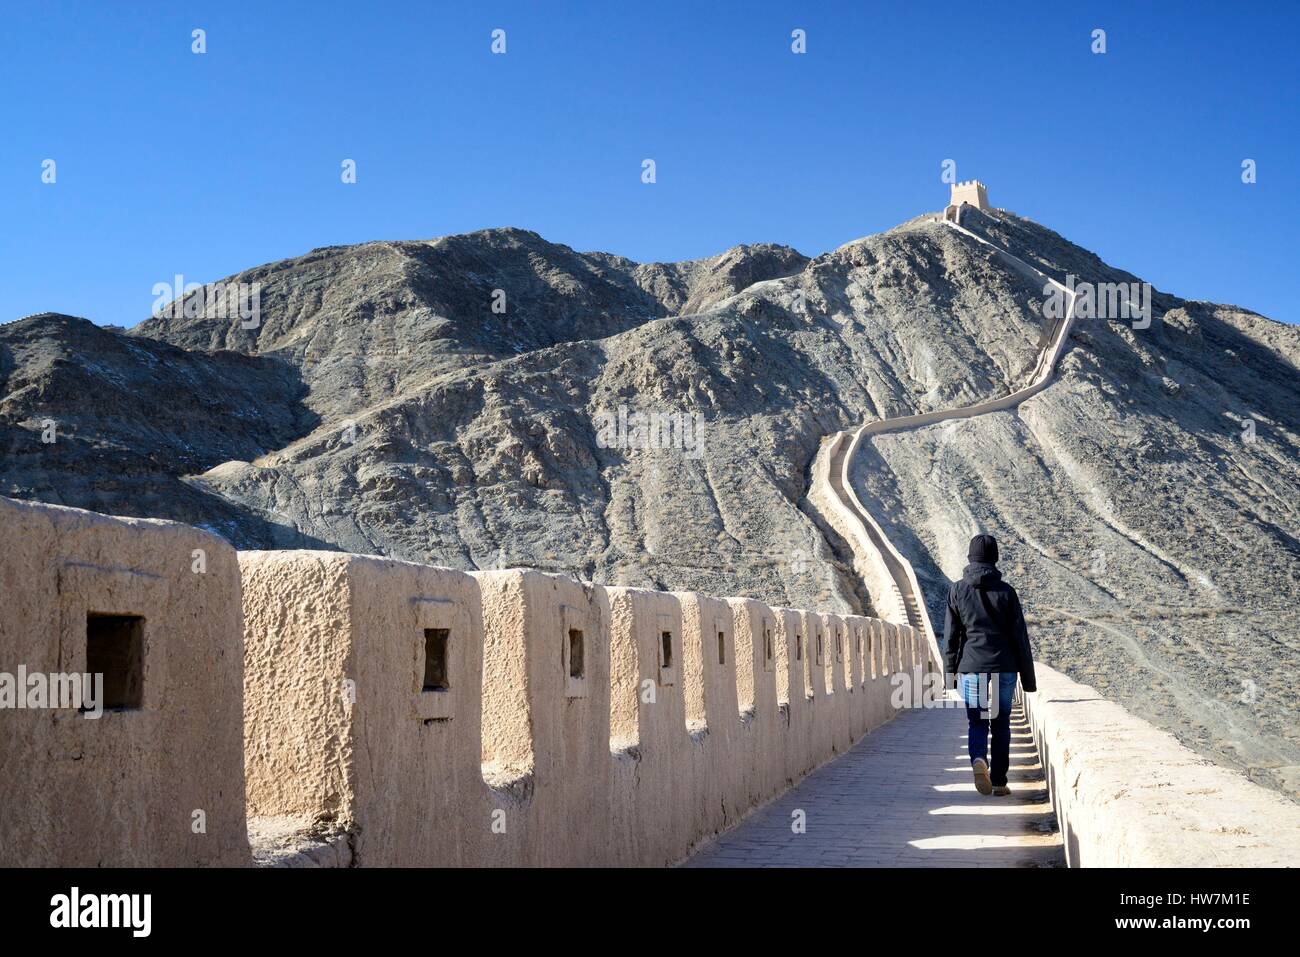 Cina, provincia di Gansu, west end della Grande Muraglia Cinese elencati come patrimonio mondiale dall' UNESCO, sovrastante grande parete vicino Jiayuguan Foto Stock